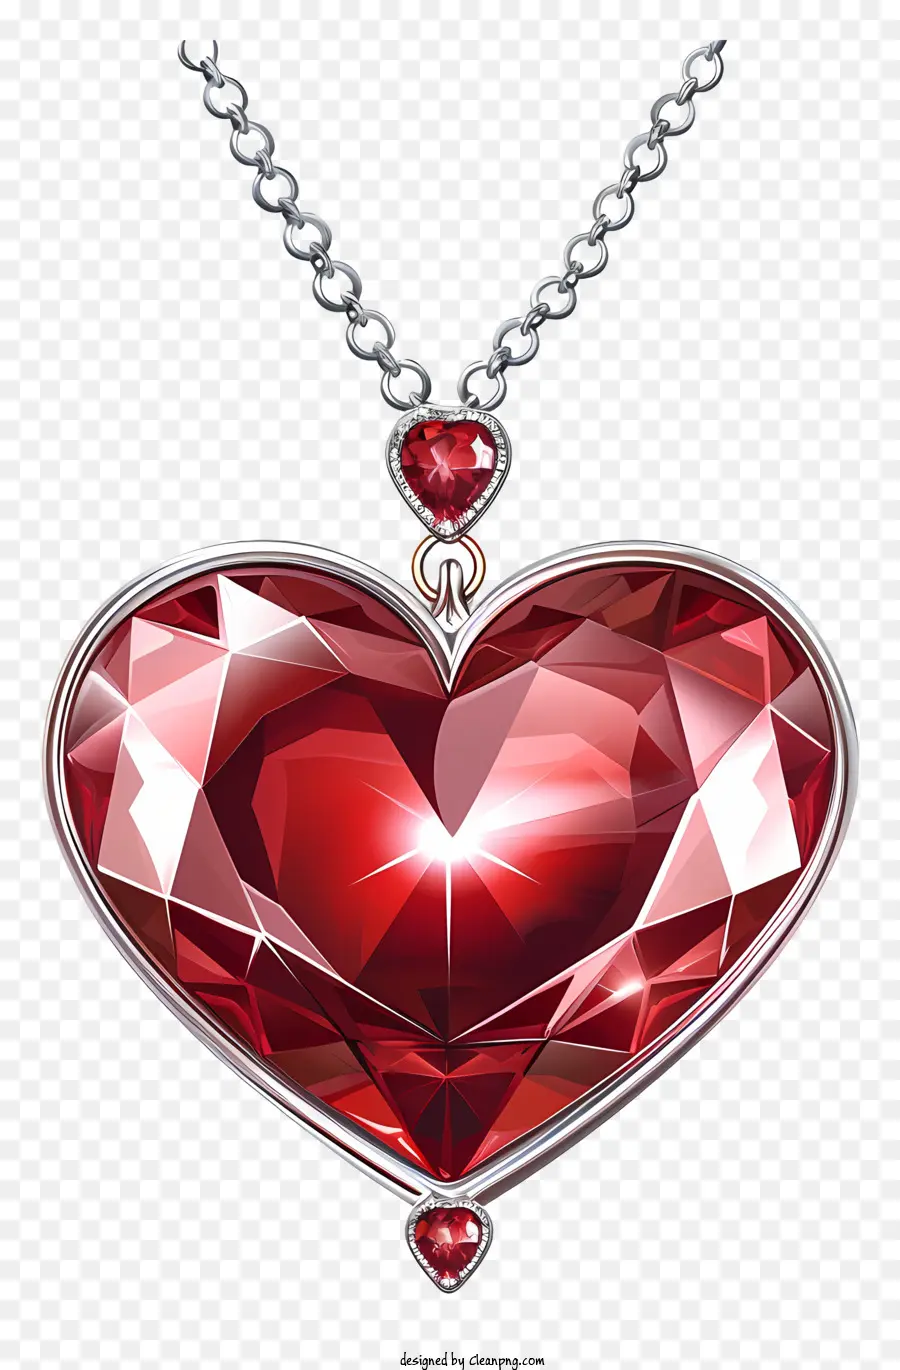 Ngày lễ tình nhân trang sức hình trái tim hình trái tim chuỗi đá quý màu đỏ đá quý màu đỏ đá quý và trang sức lấp lánh - Đá quý trái tim đỏ trên chuỗi bạc, thanh lịch và đẹp